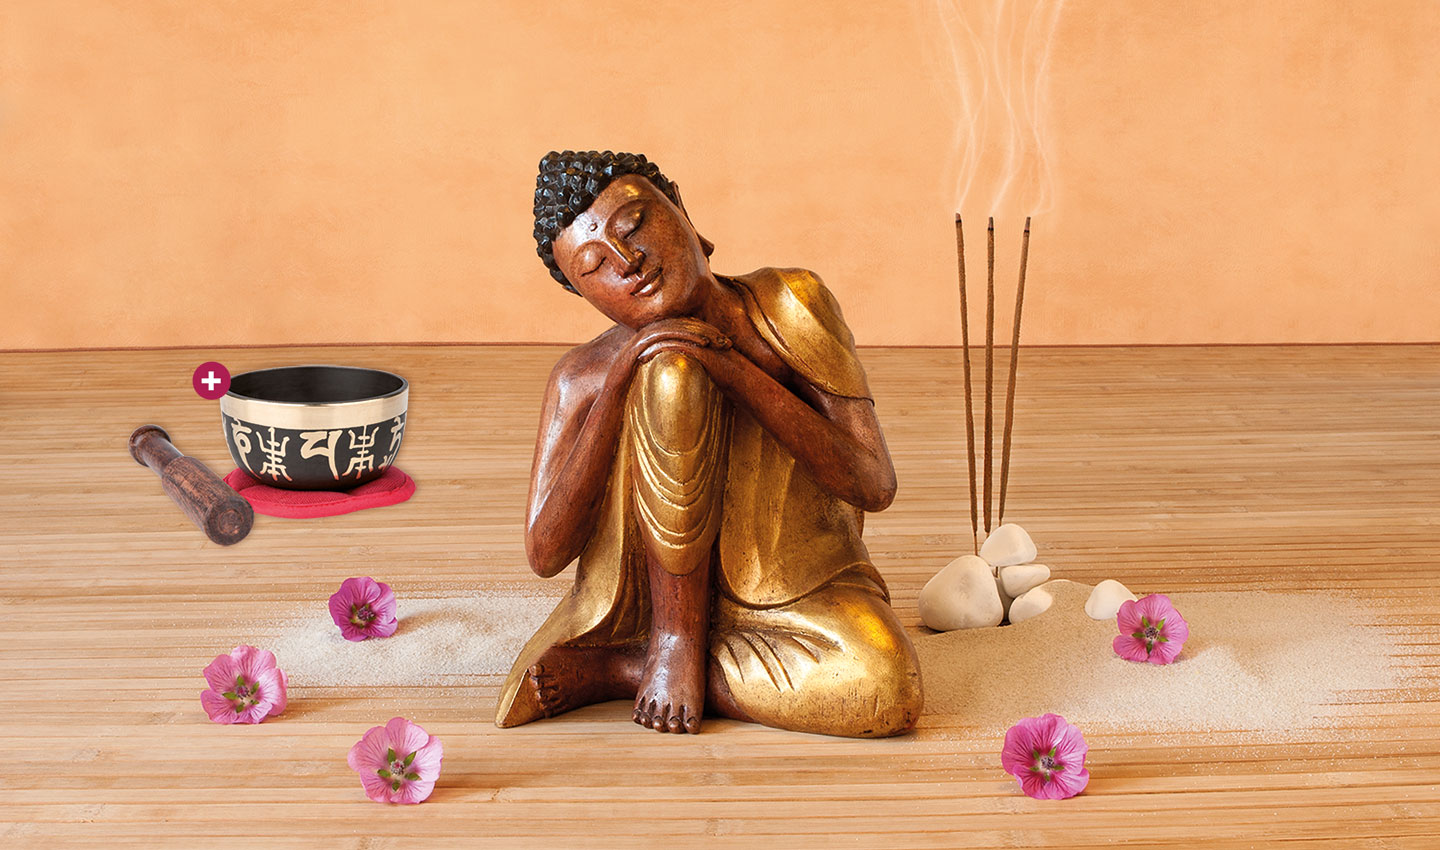 Hölzerne Buddha-Statue auf einem Holzfußboden umgeben von pinken Blumen. Daneben Räucherstäbchen und das Produkt Klangschale „OM Mani Padme Hum“